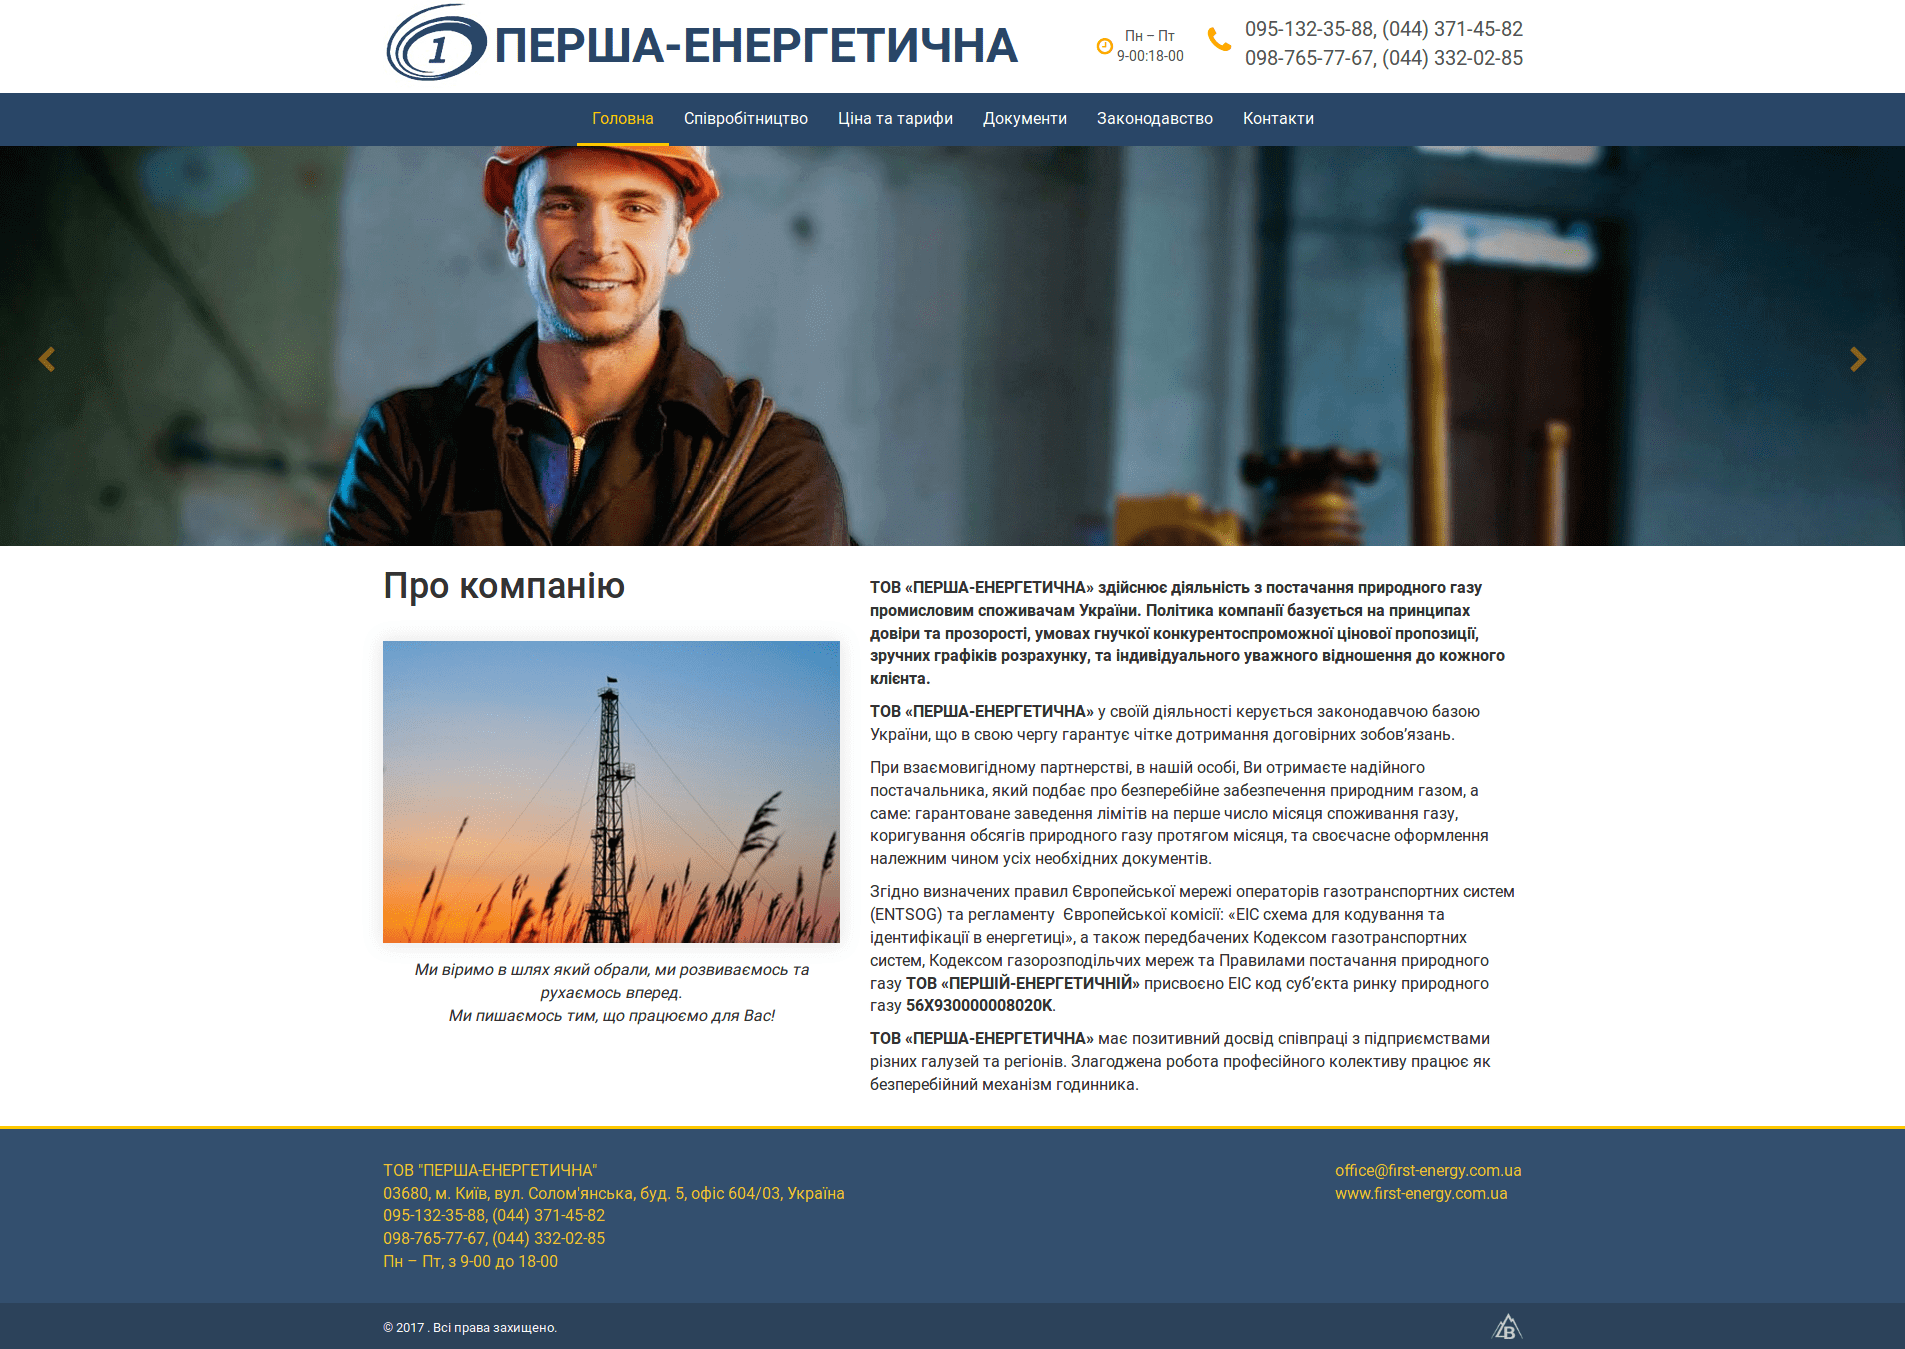 Головна сторінка сайту компанії "Перша-енергетична"